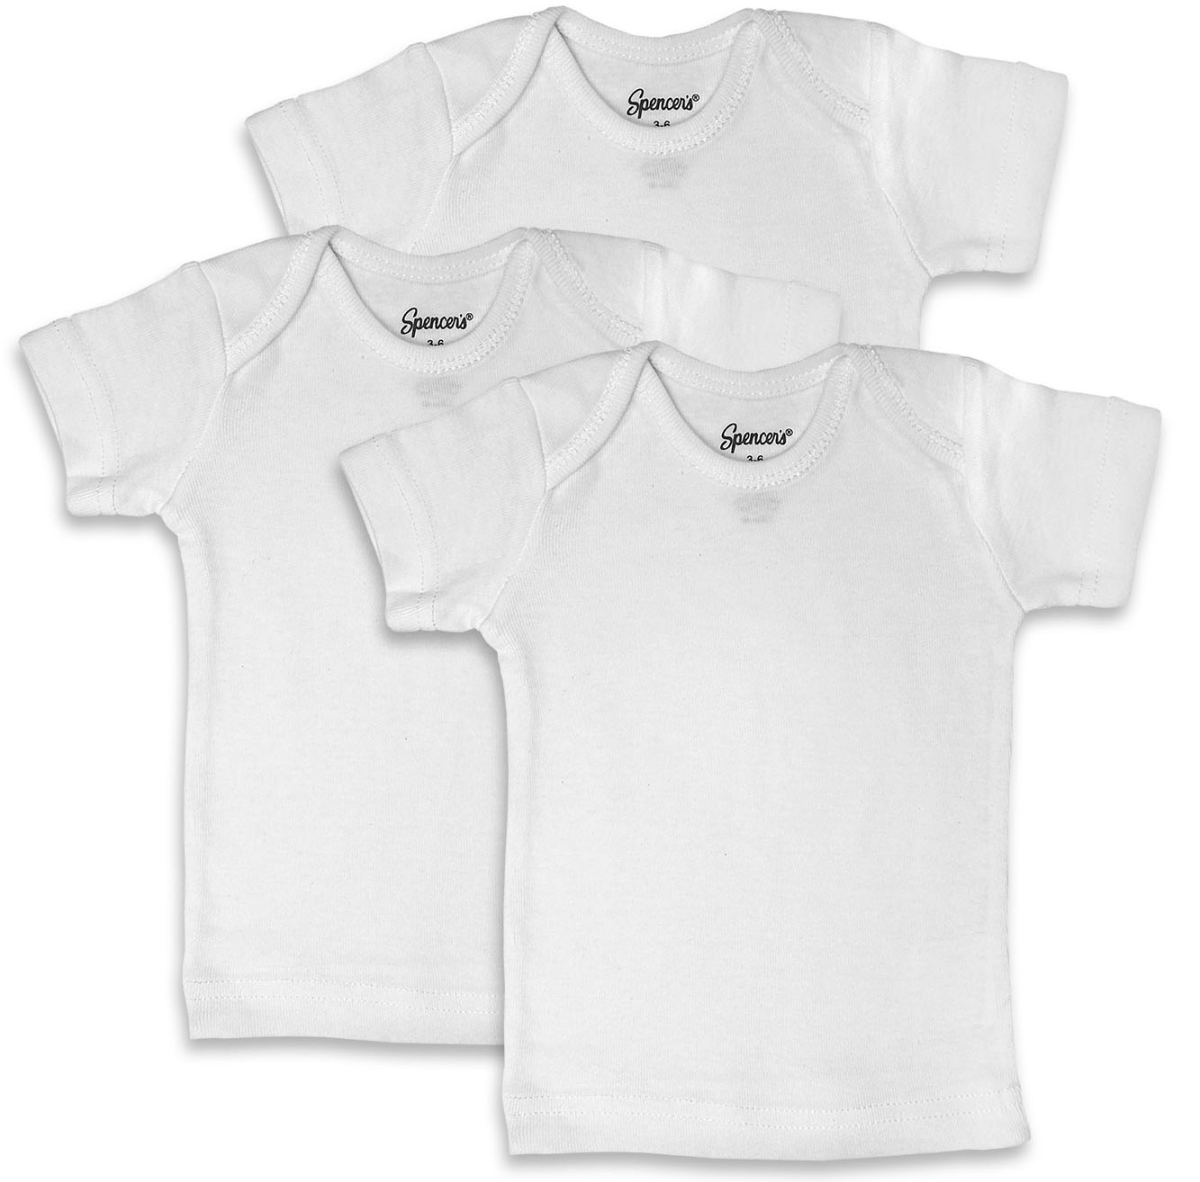 150-3-18 7 Piece White Lap Shoulder Shirts - 18 Months